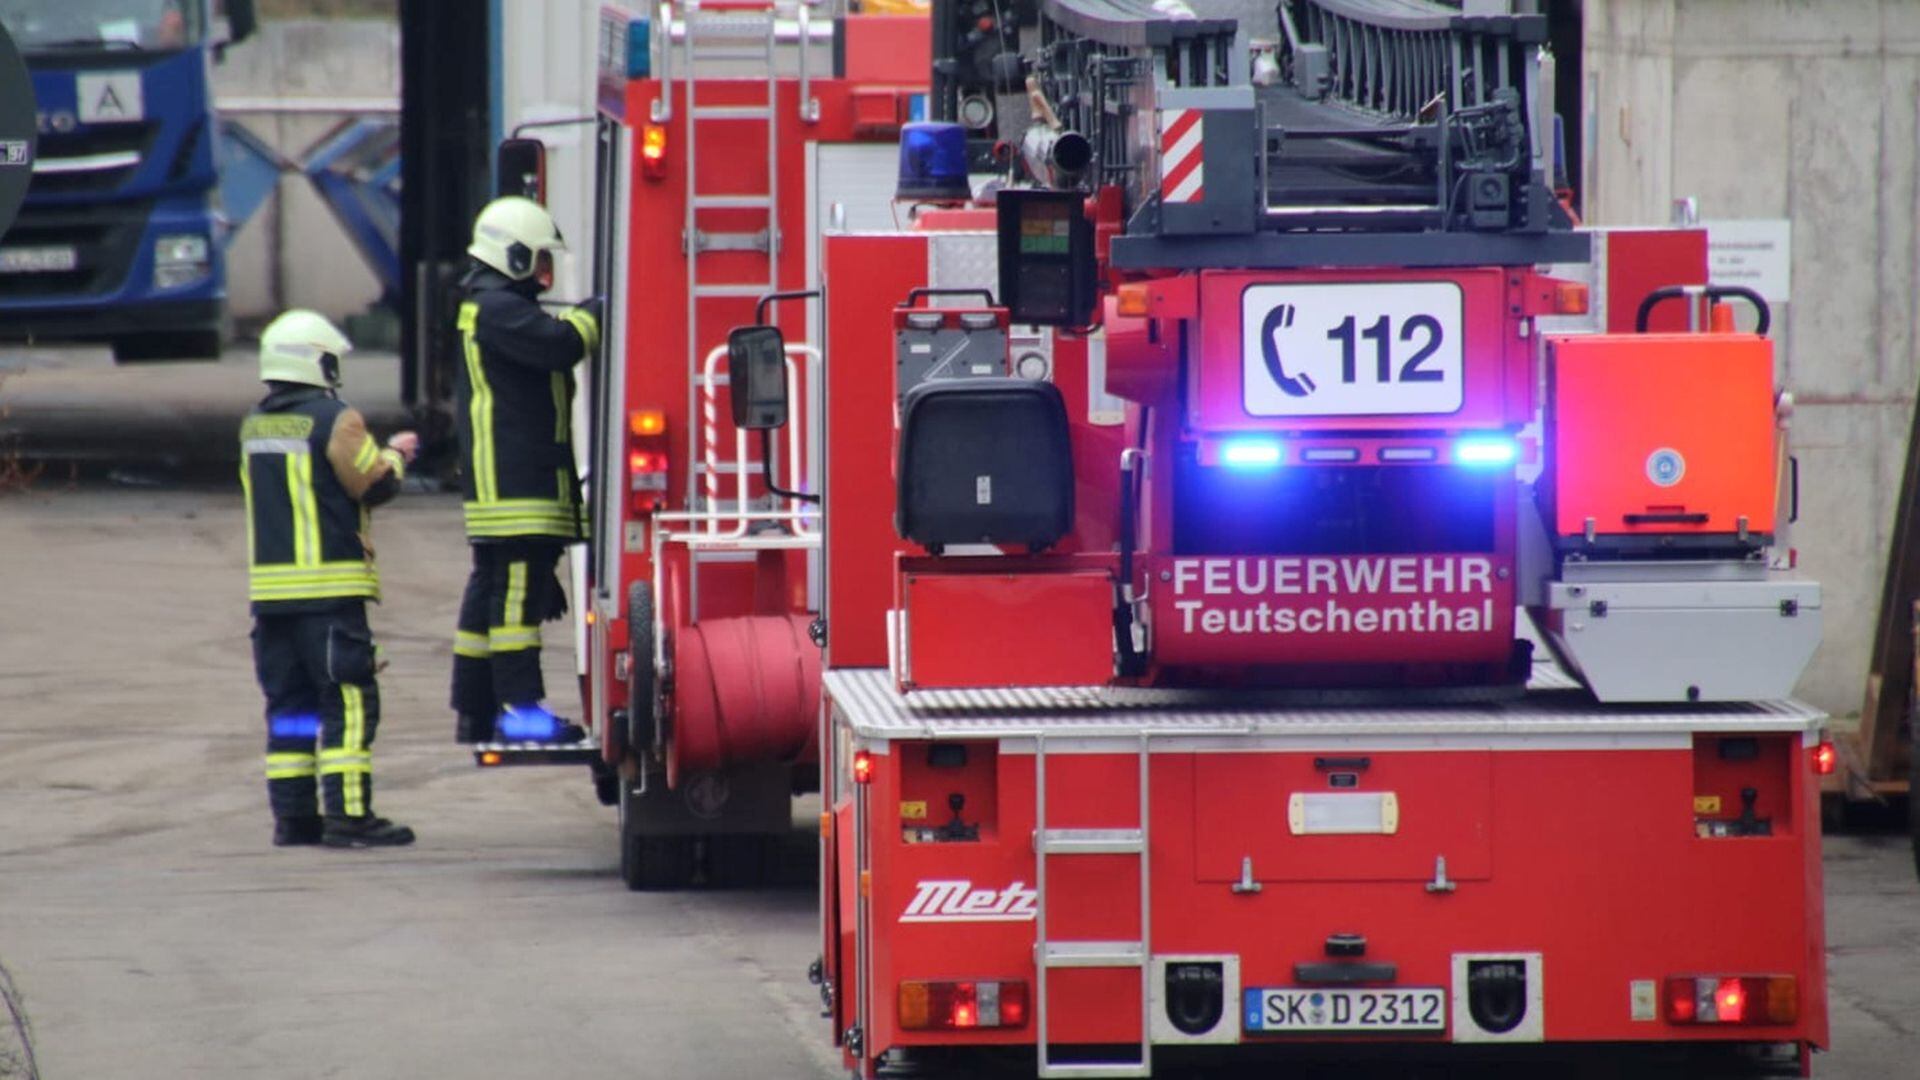 Los bomberos llegan al lugar después de una explosión en la mina Teutschenthal cerca de Halle, Alemania, el 8 de noviembre de 2019. Reuters / Marvin Gaul